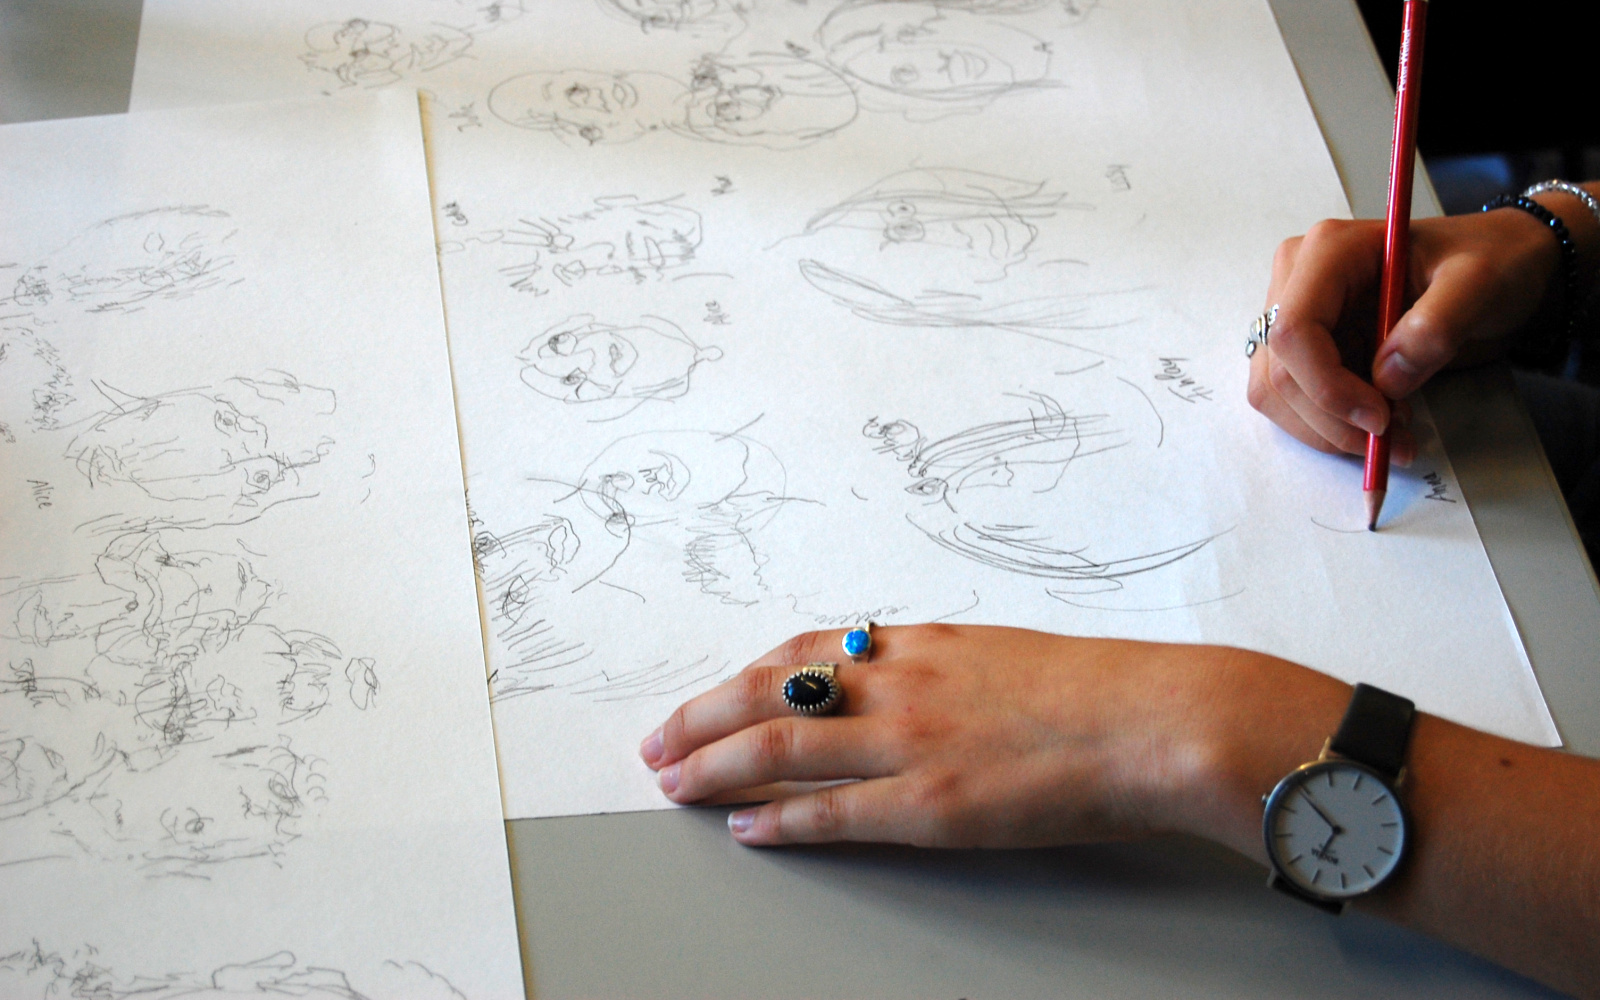 Zu sehen zwei Hände, die auf einem Blatt Papier zeichnen im Rahmen einer Veranstaltung der Kulturakademie.